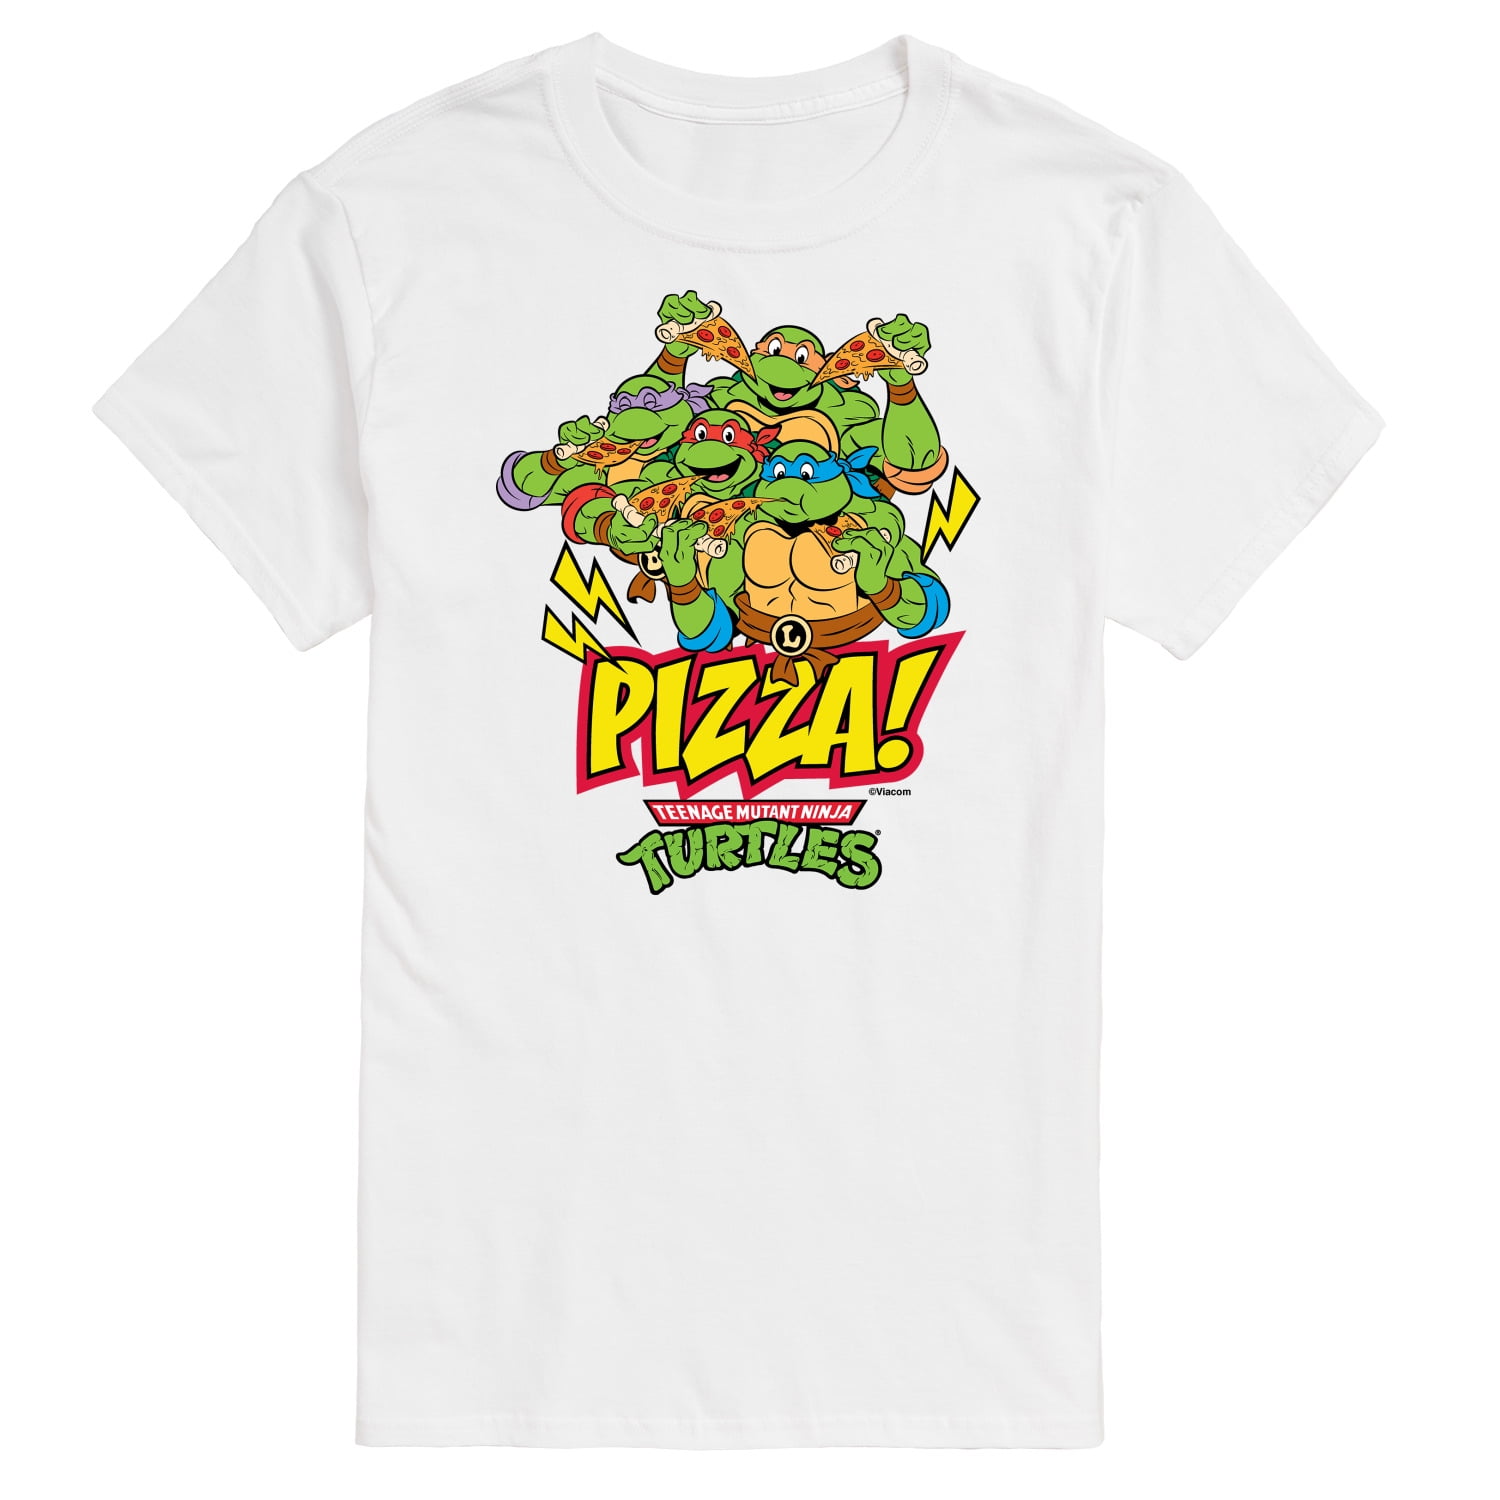  Tee Luv Men's Teenage Mutant Ninja Turtles Pizza T